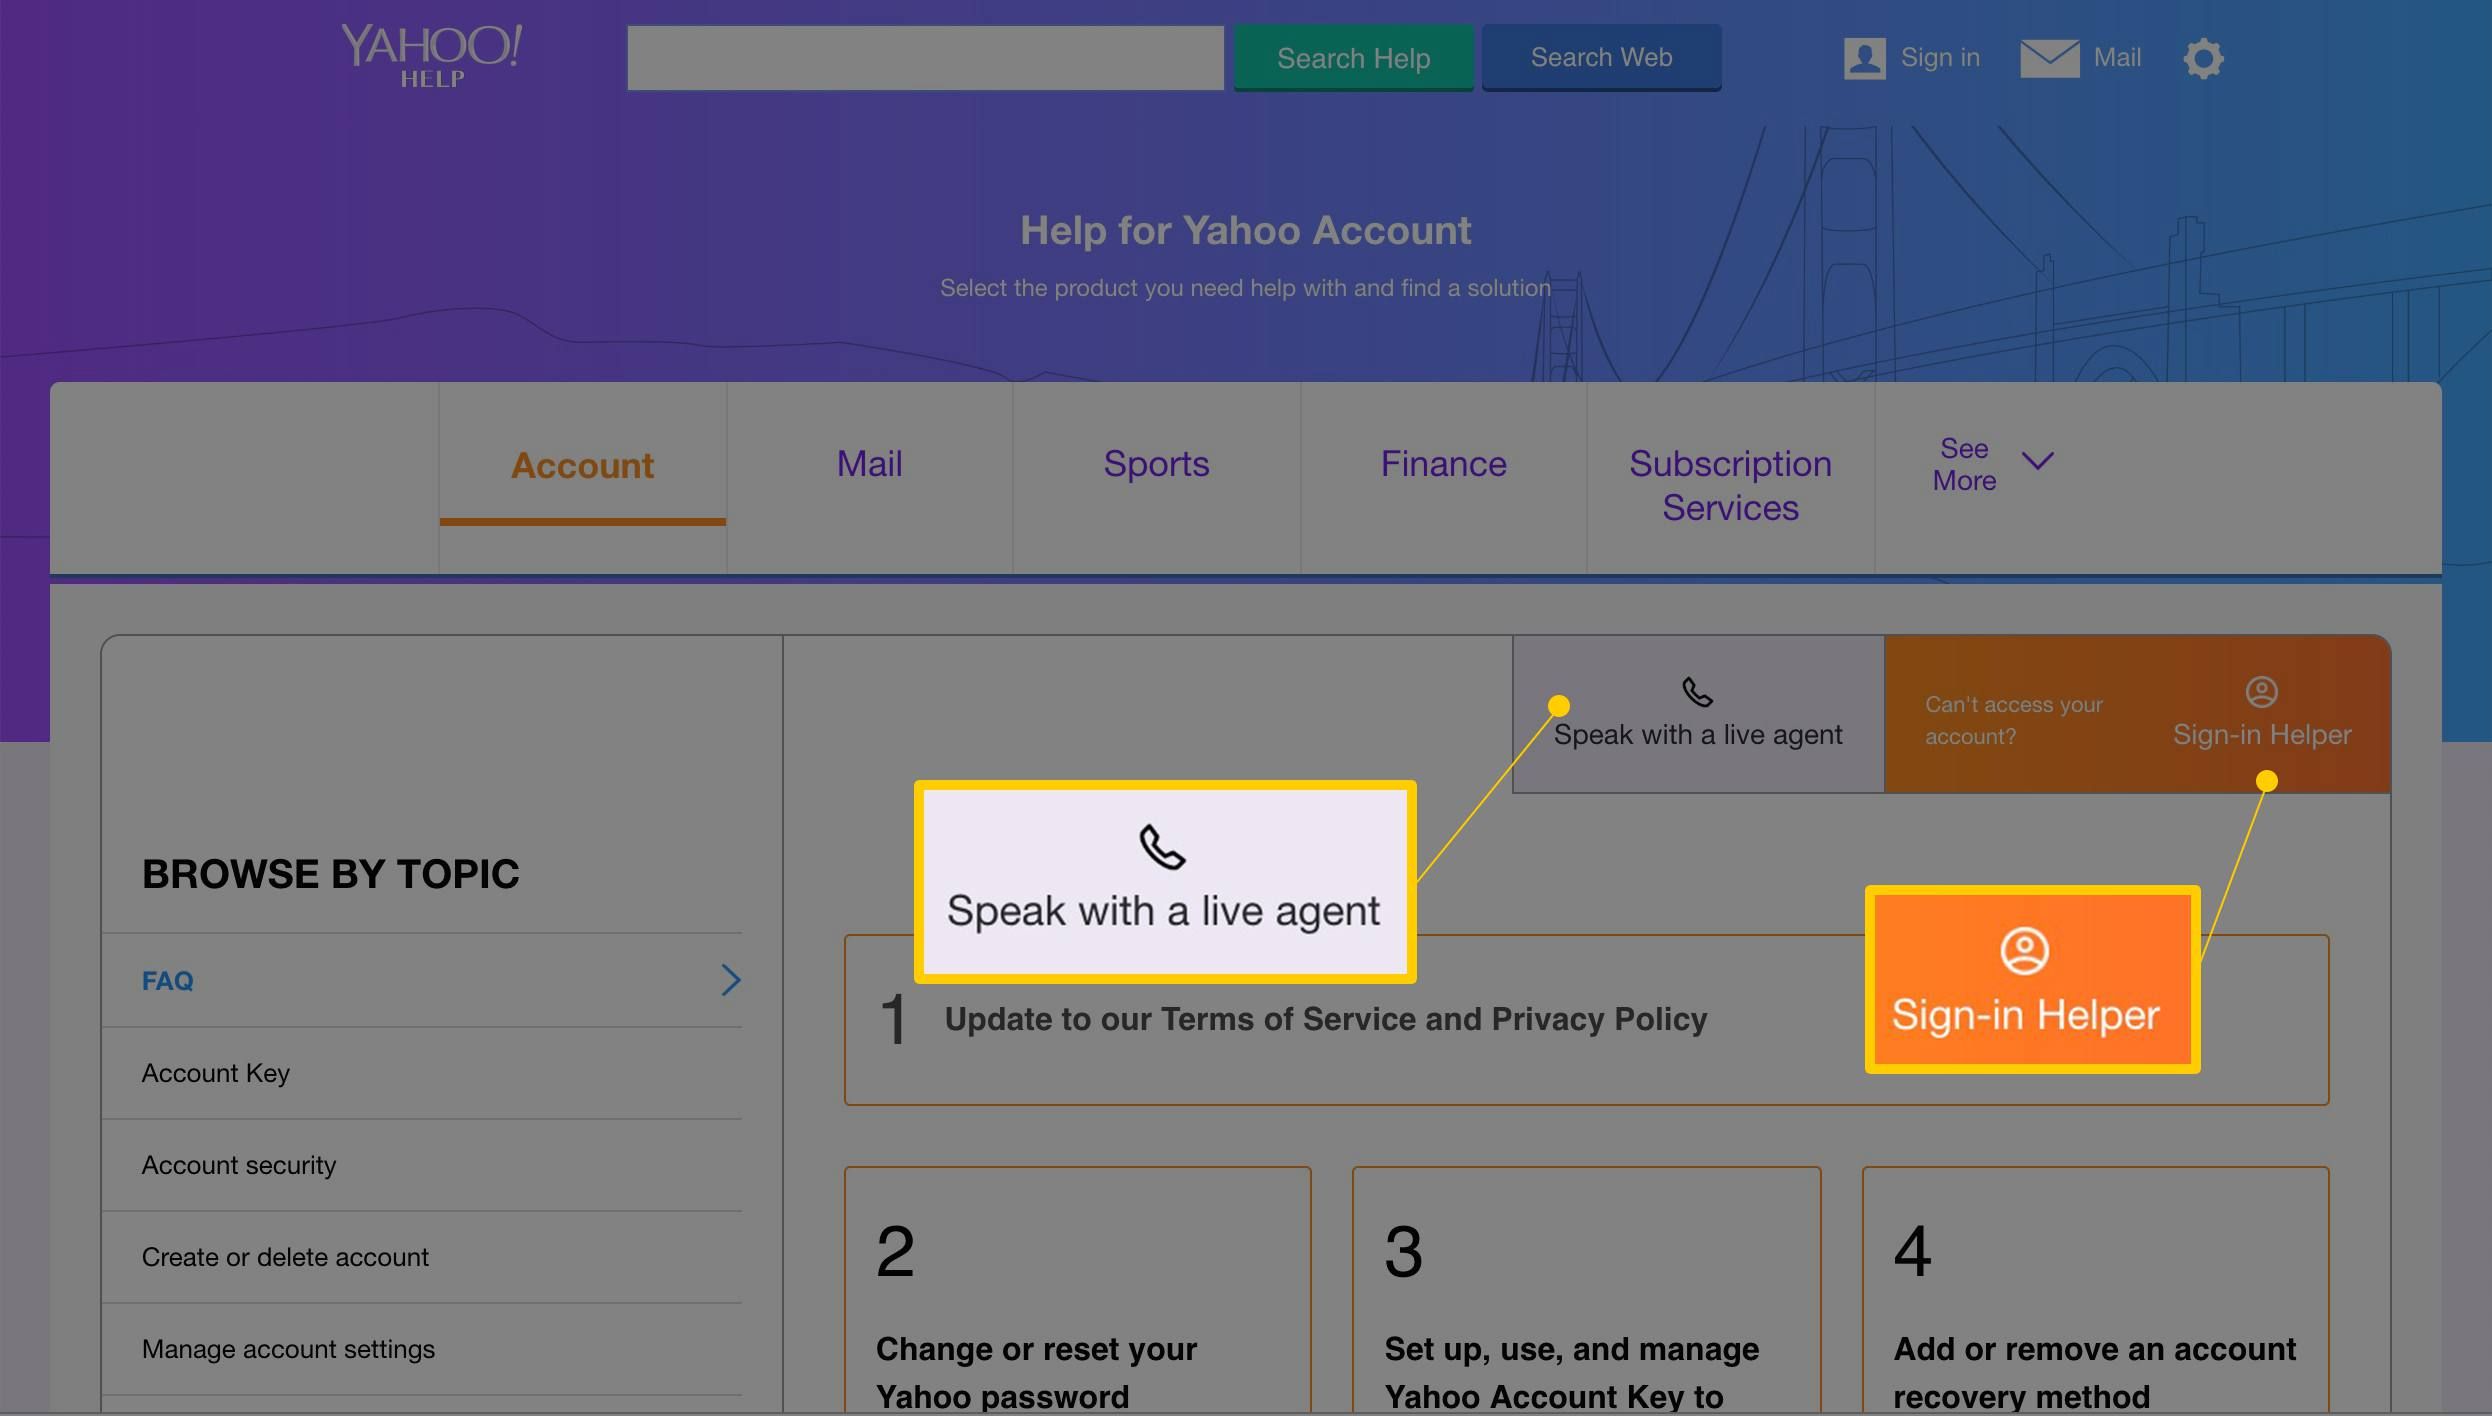 Поговорите с живым агентом и кнопками входа в систему на странице поддержки почты Yahoo.